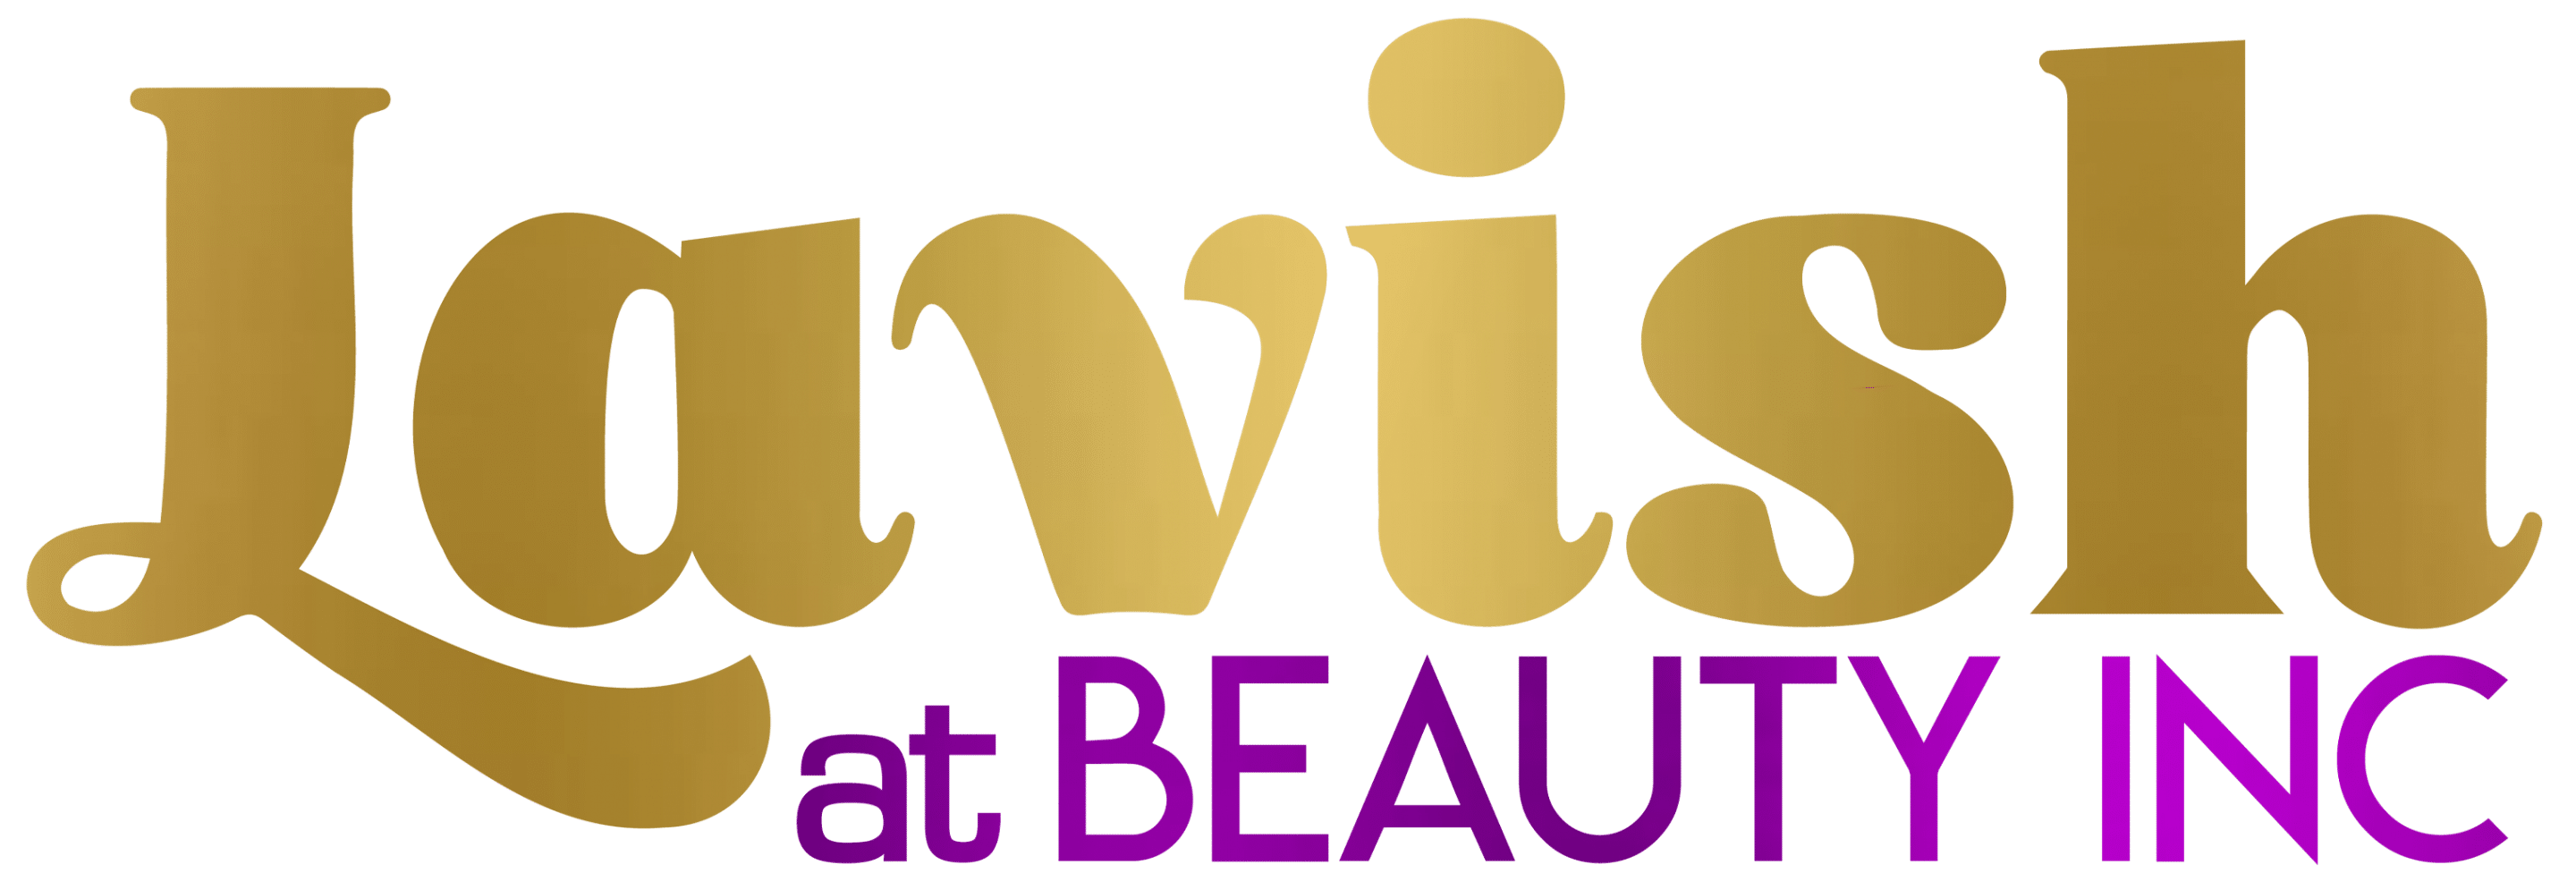 Lavish at Beauty Inc Logo